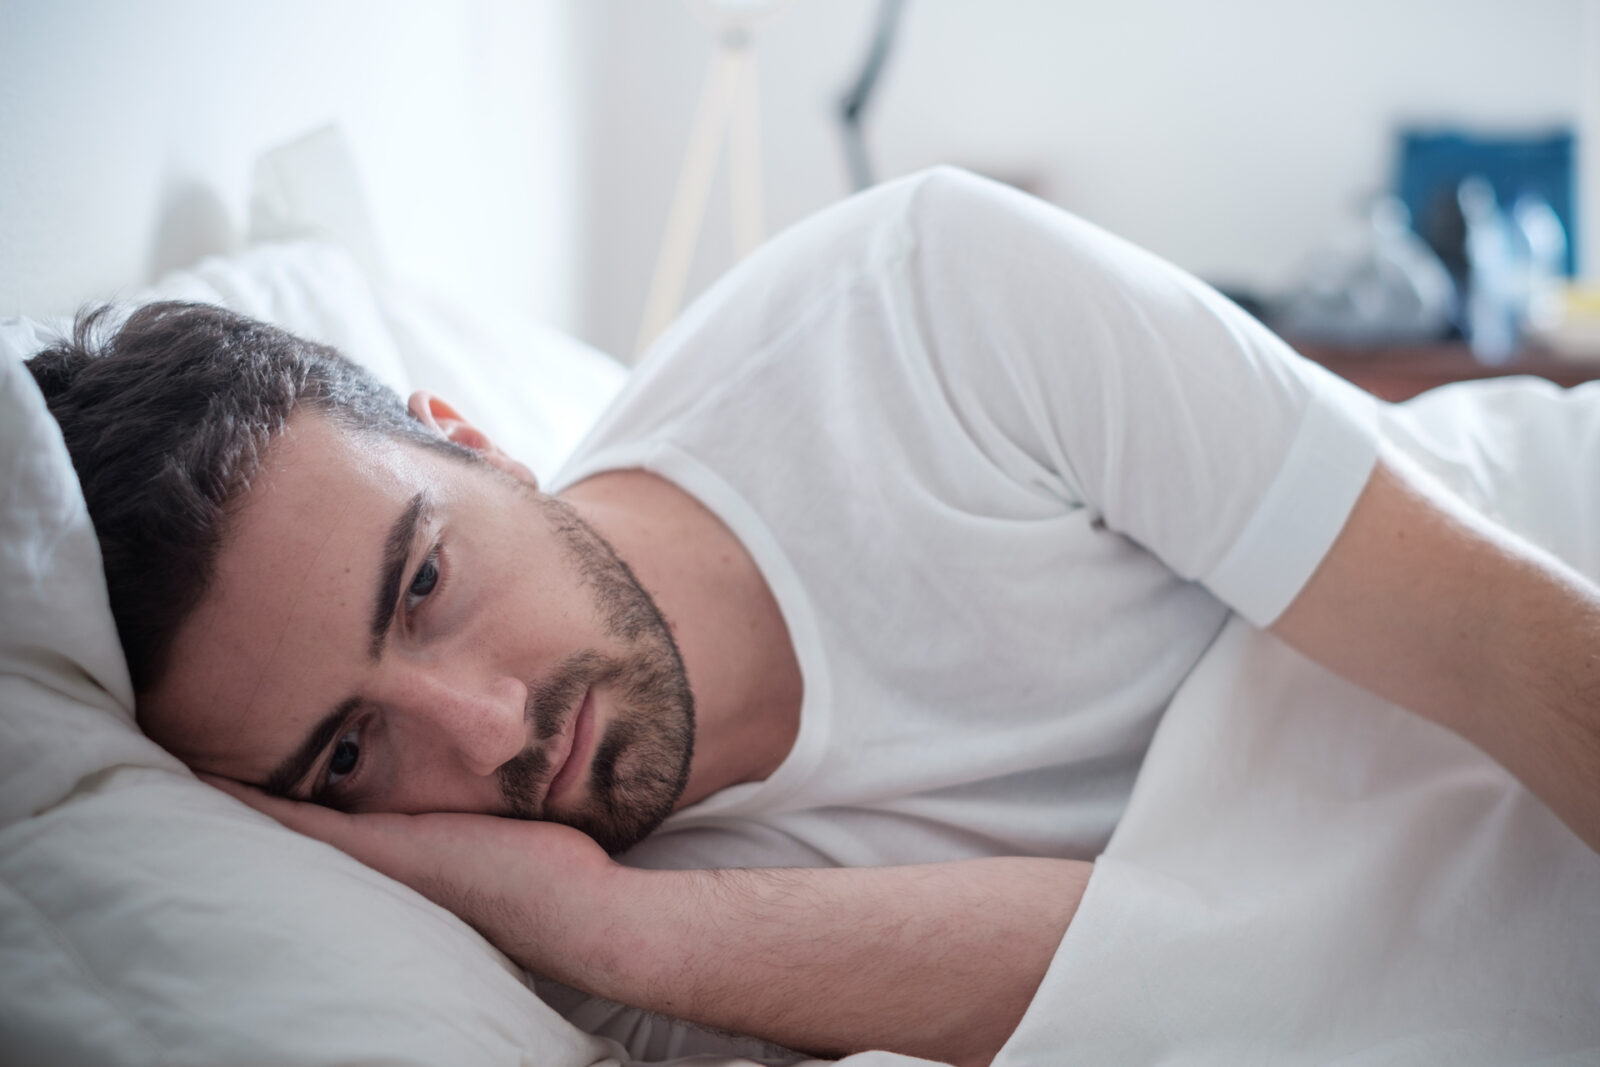 Man awake suffering from Snoring and Sleeping Disorder